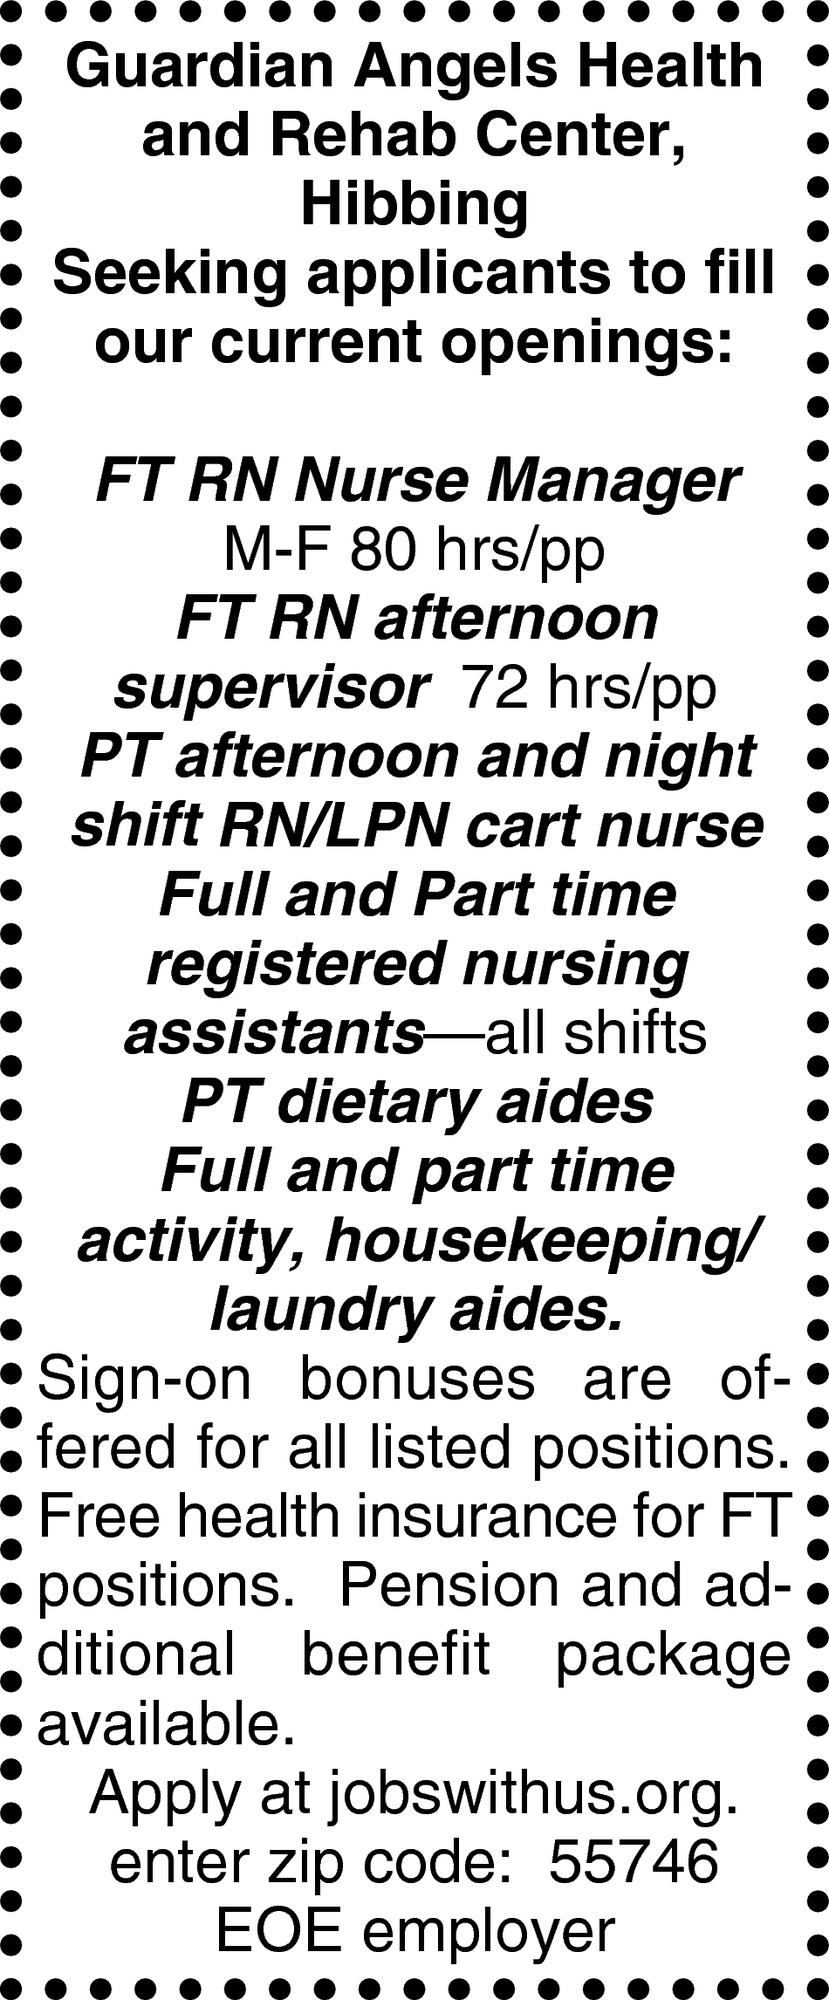 FT RN Nurse Manager, FT RN Afternoon Supervisor